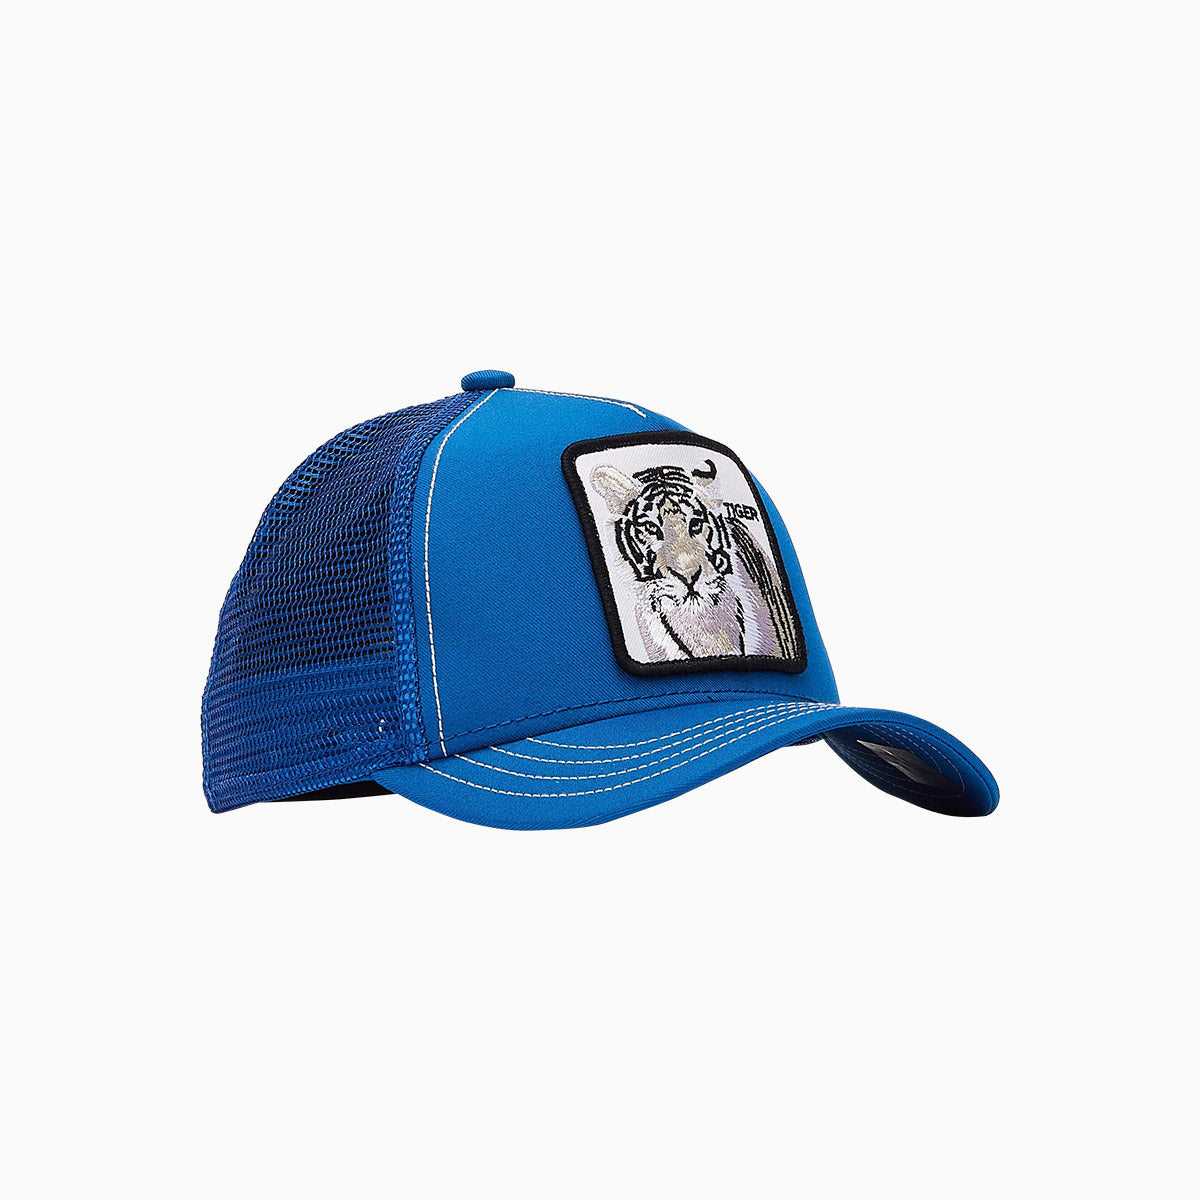 The Stripe Earner Trucker Hat